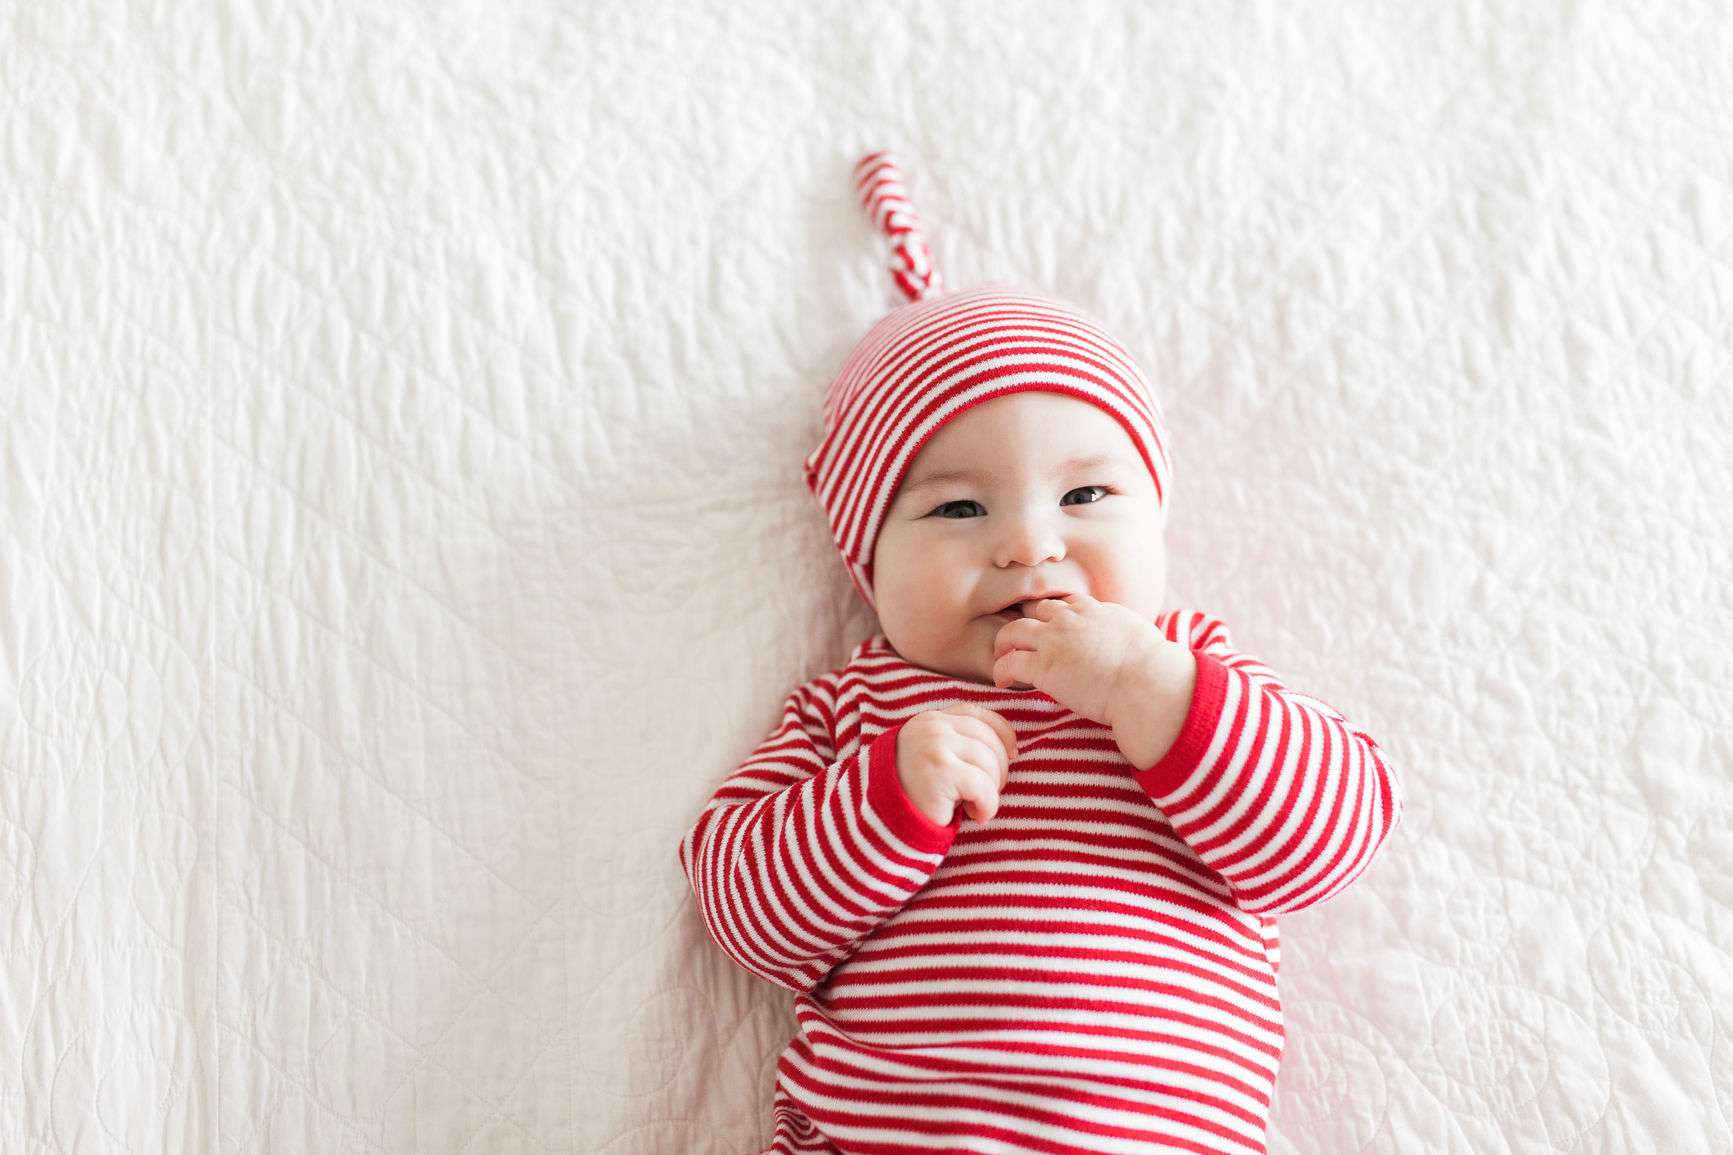 Liegendes Baby in rot-weiß-gestreiftem Body und Mütze knabbert an seiner Hand.